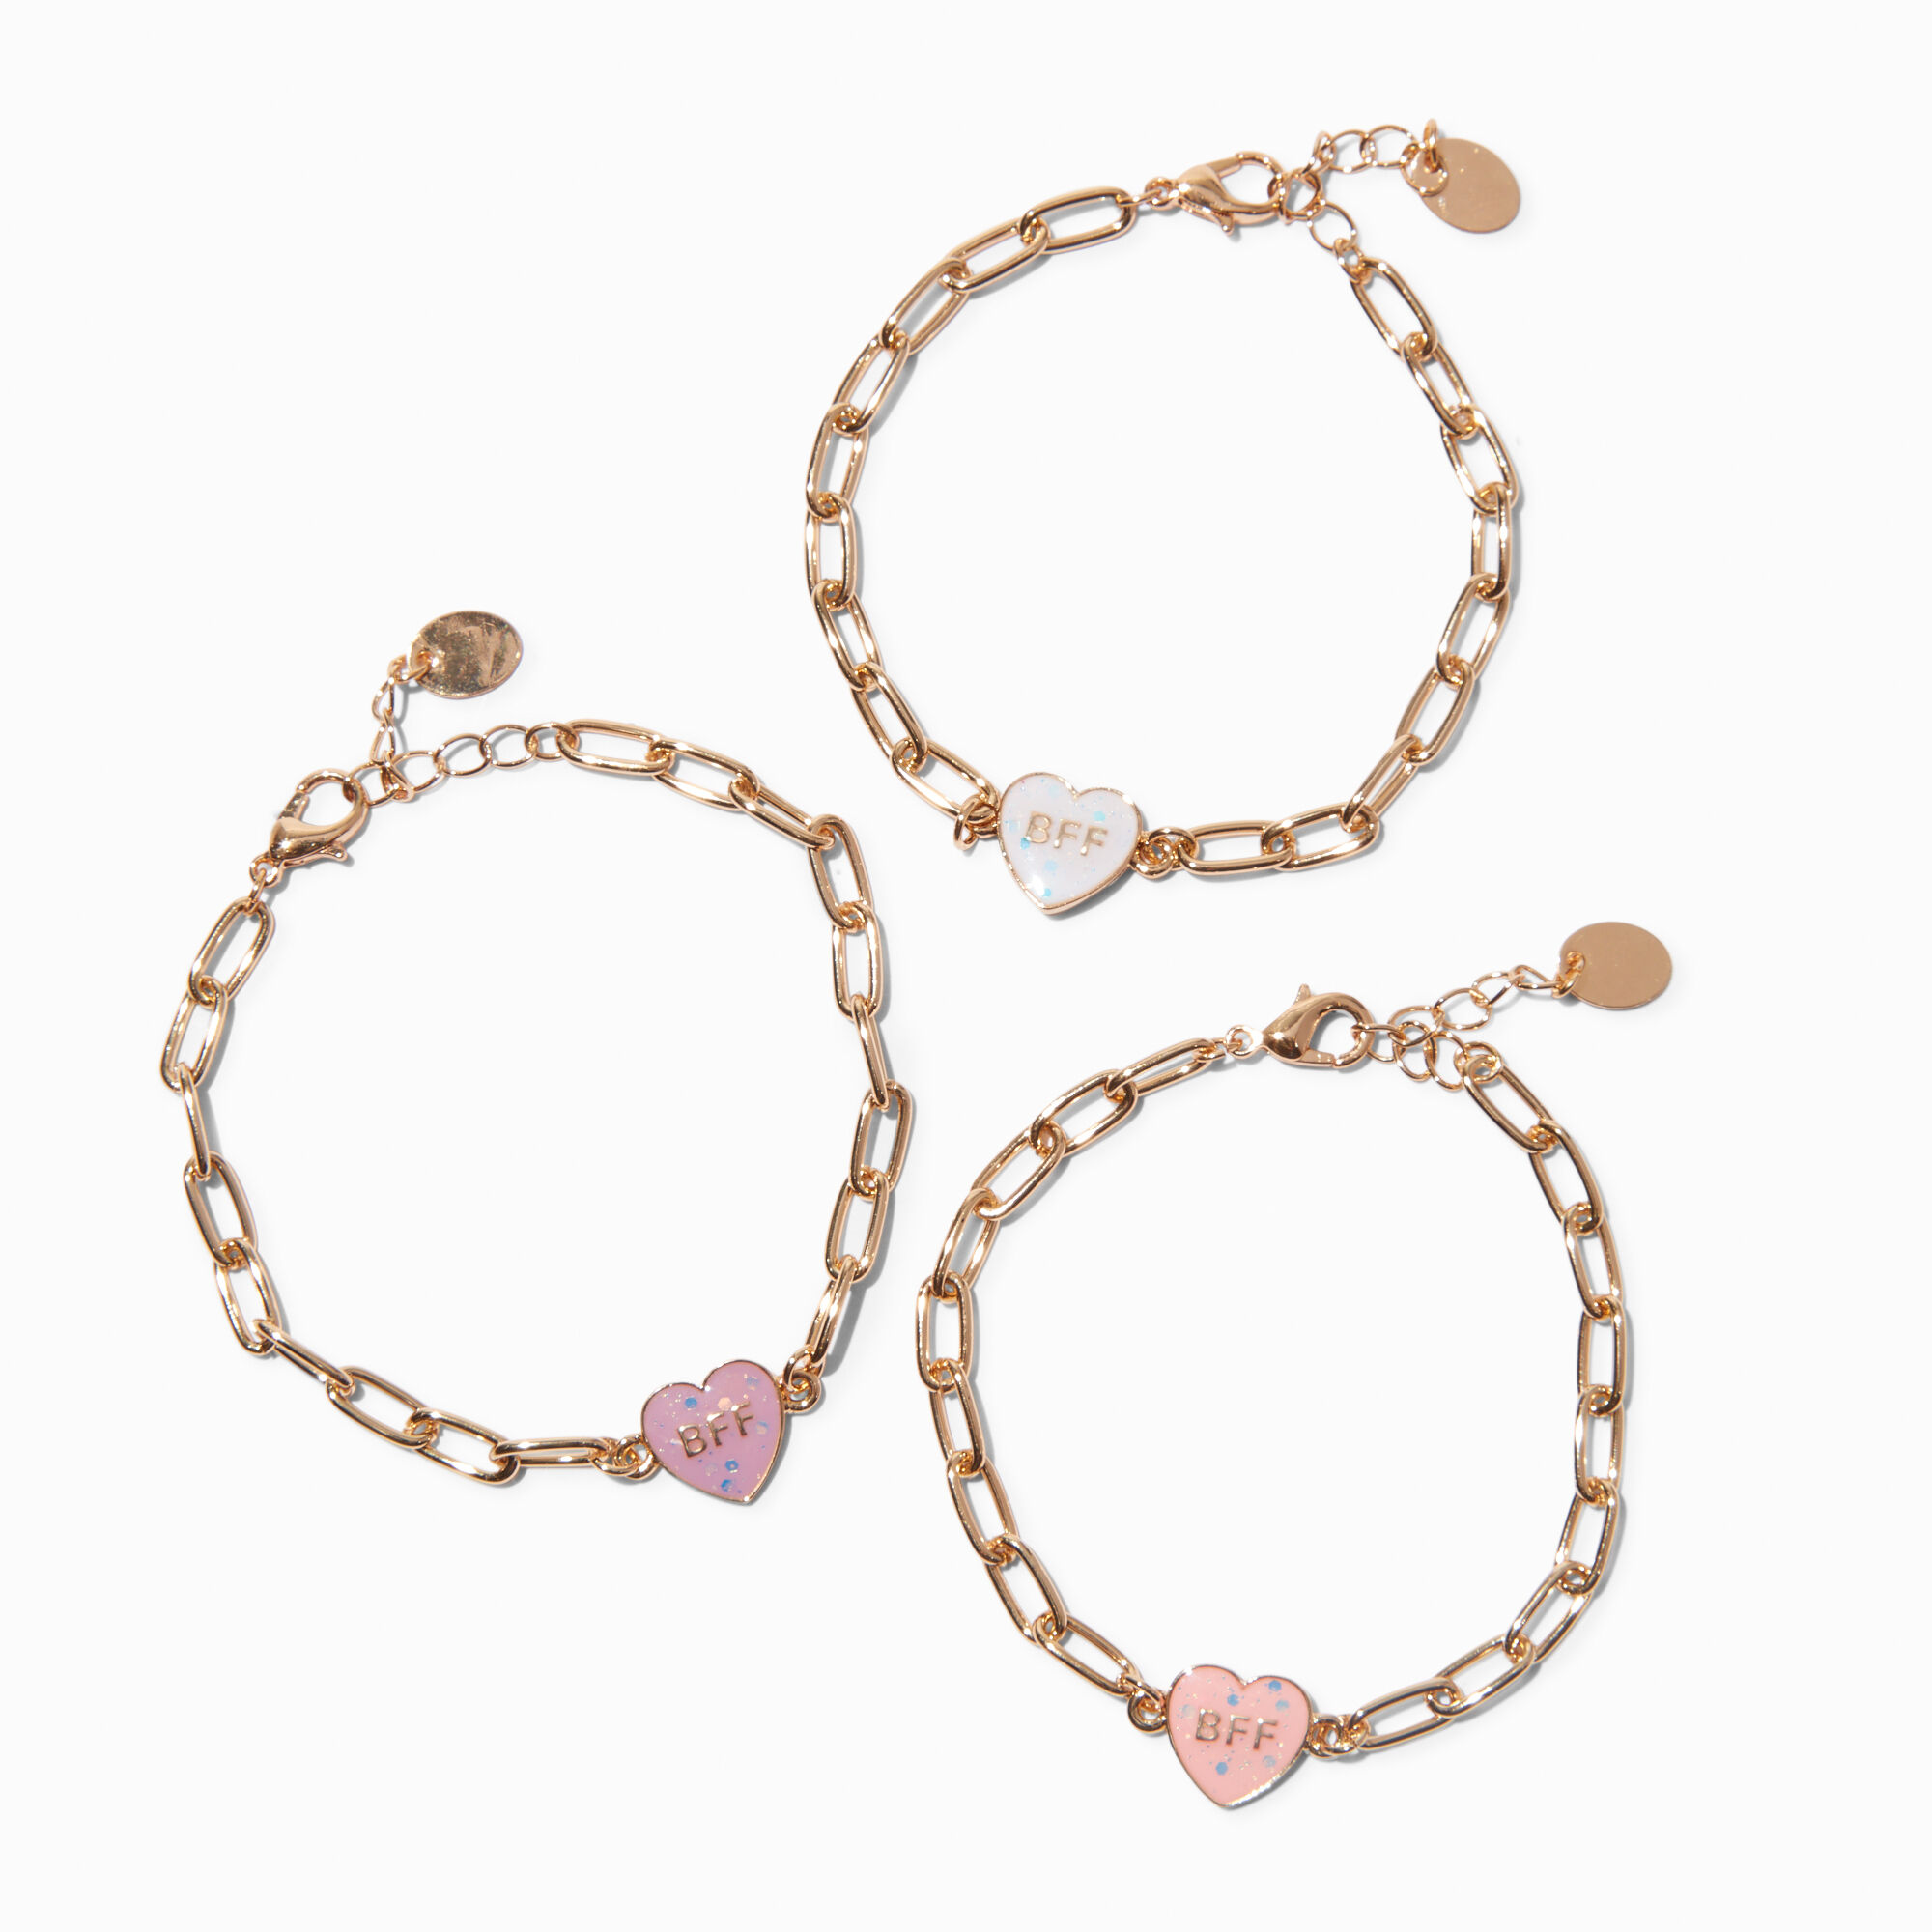 Pastel Rainbow Adjustable Friendship Bracelets - 3 Pack | Claire's US